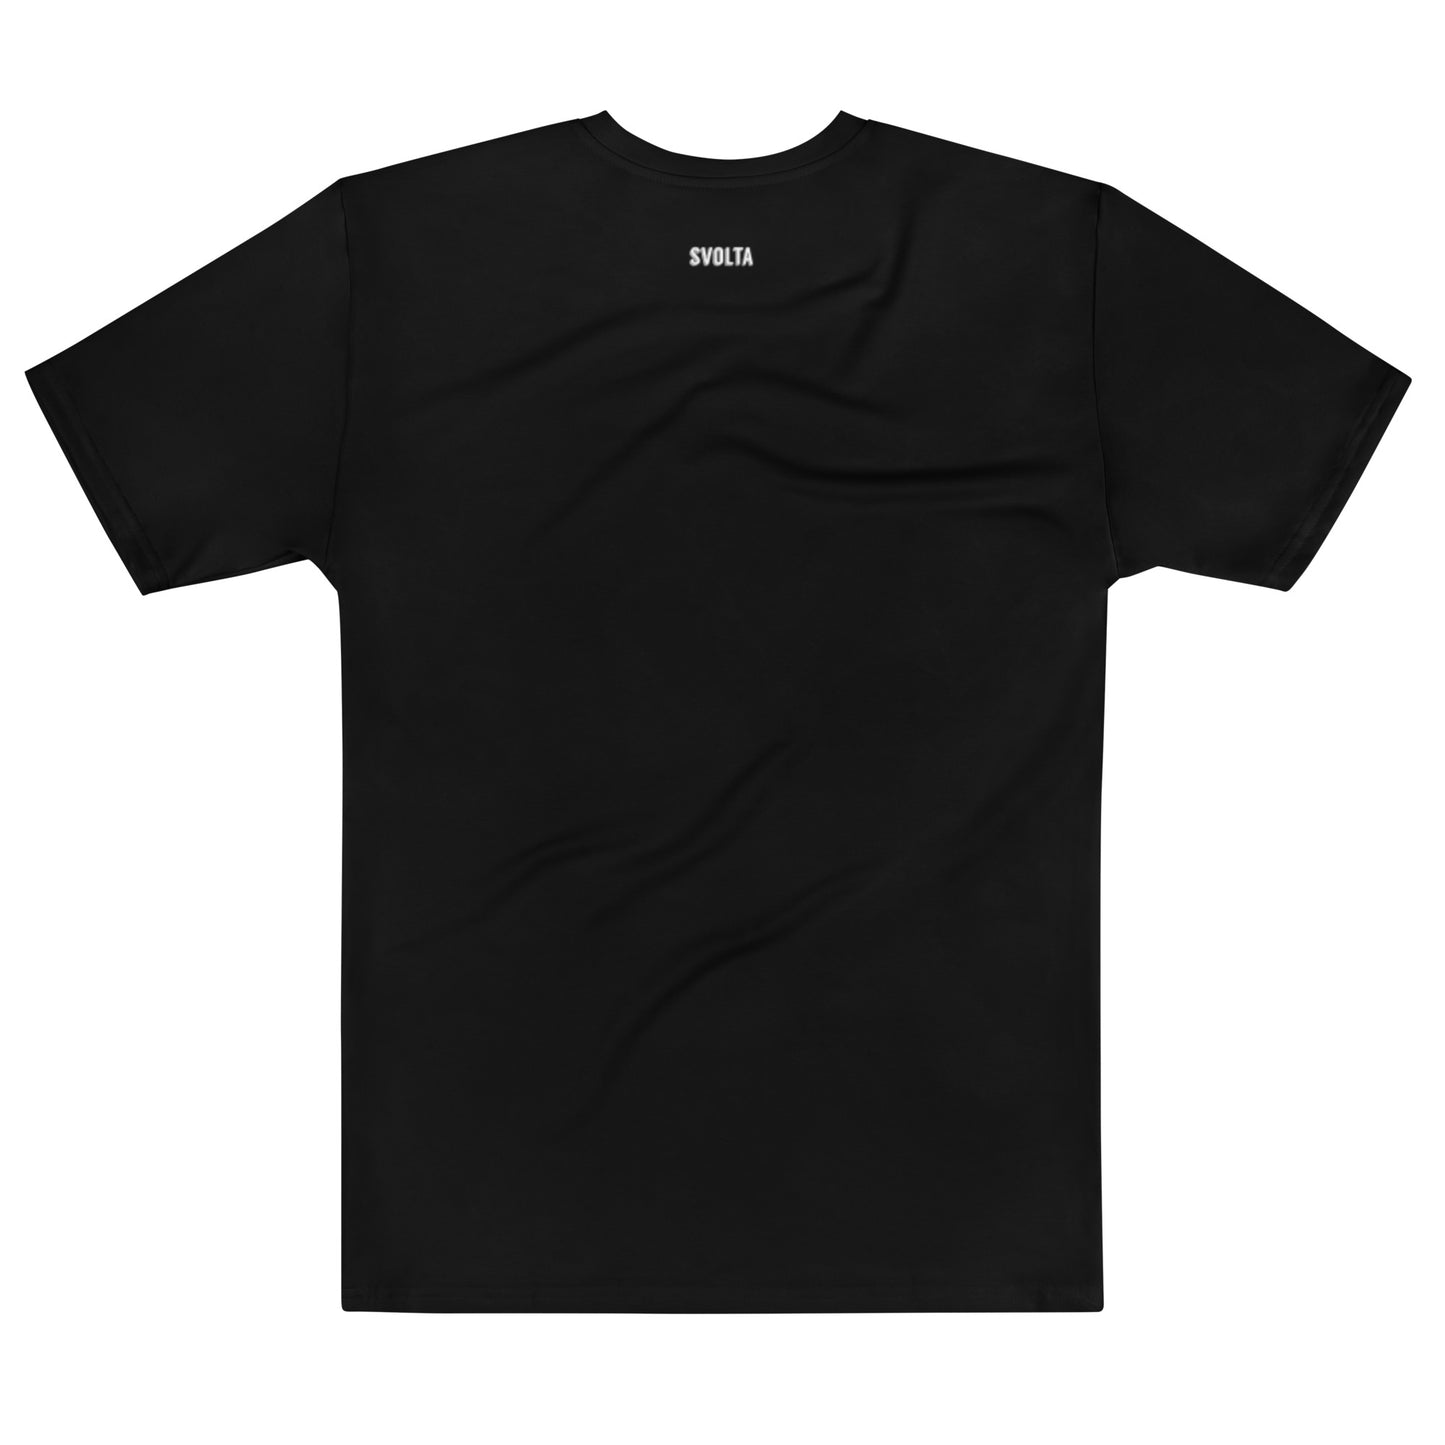 SVOLTA Kawaii Rebel DJ T-shirt in Black, XS-XL - Teen to Adult